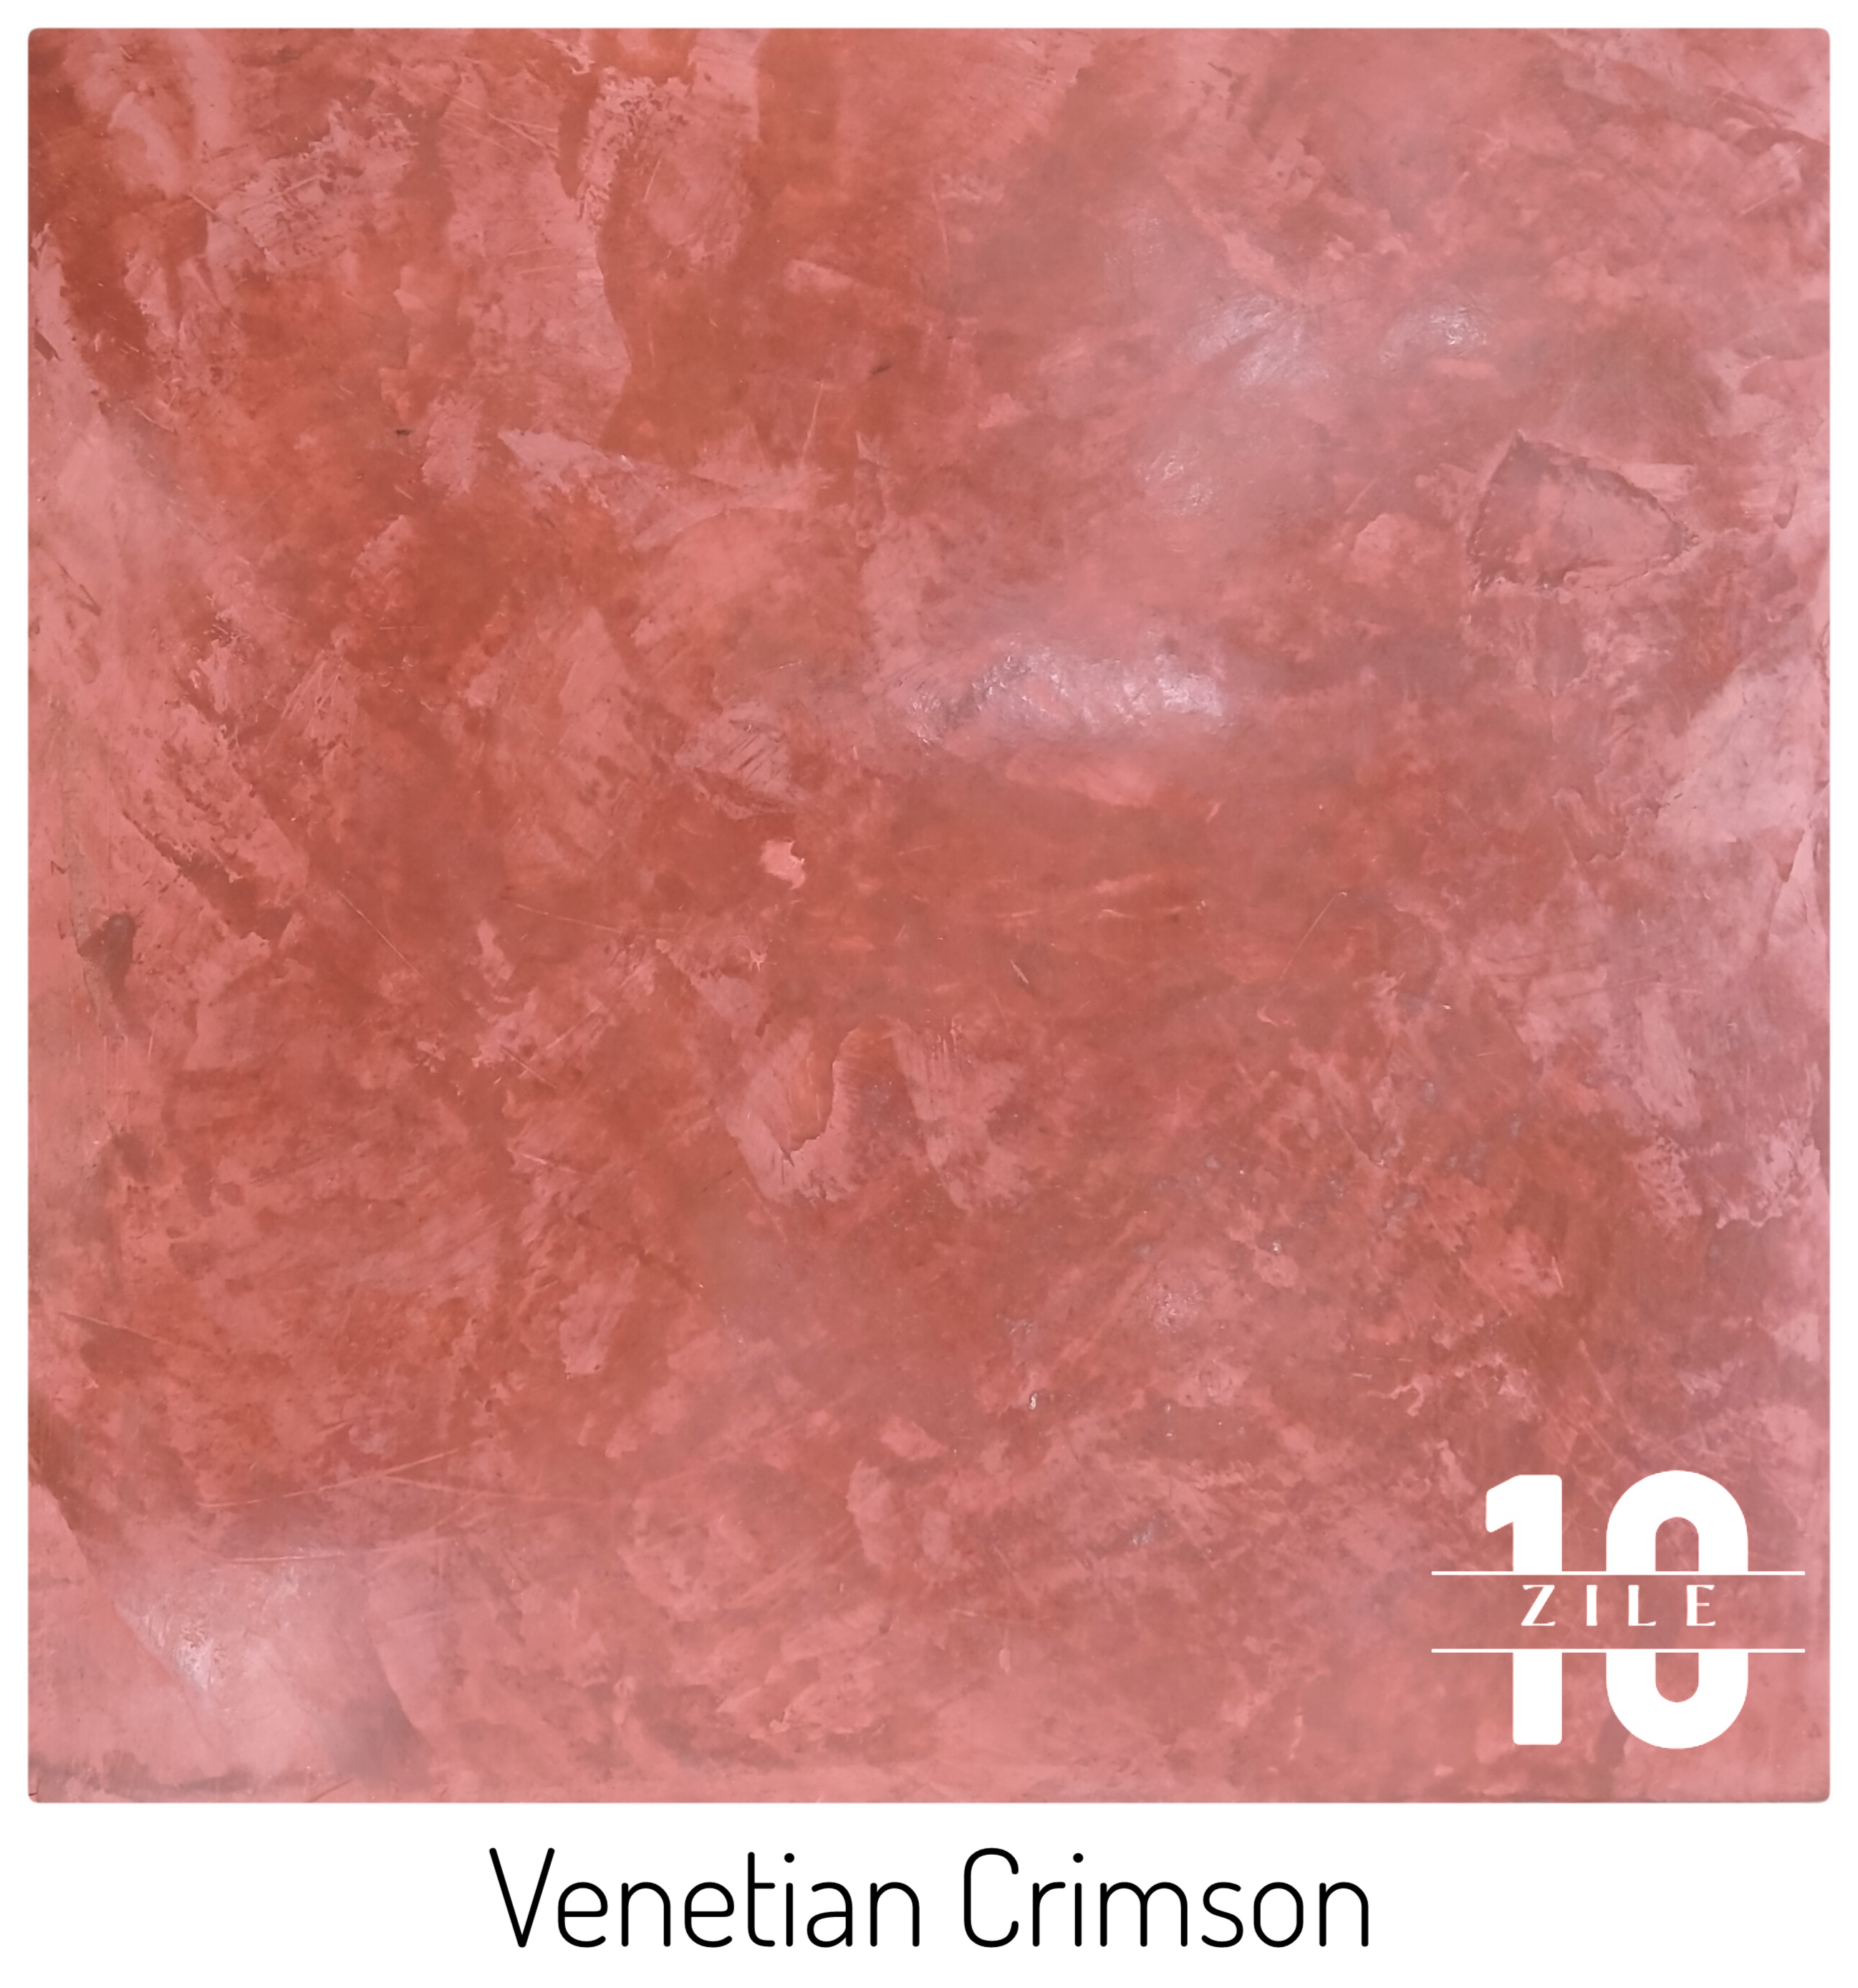 venetian plaster texture